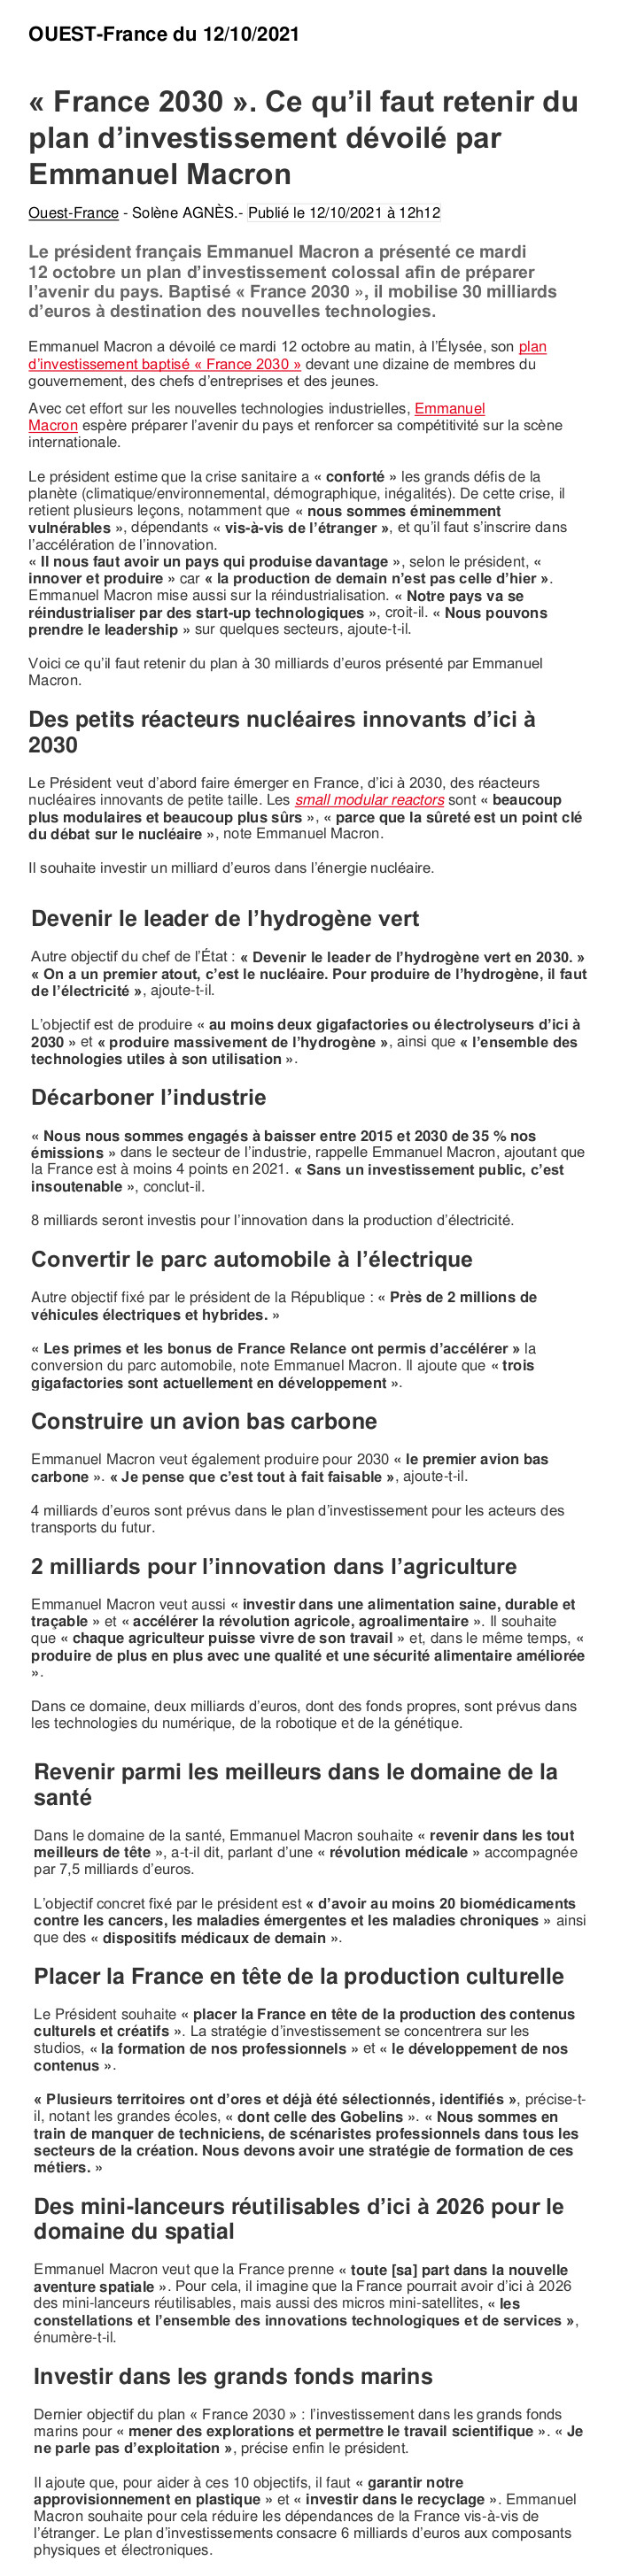 Plan d'investissement "France 2030"  Macron10